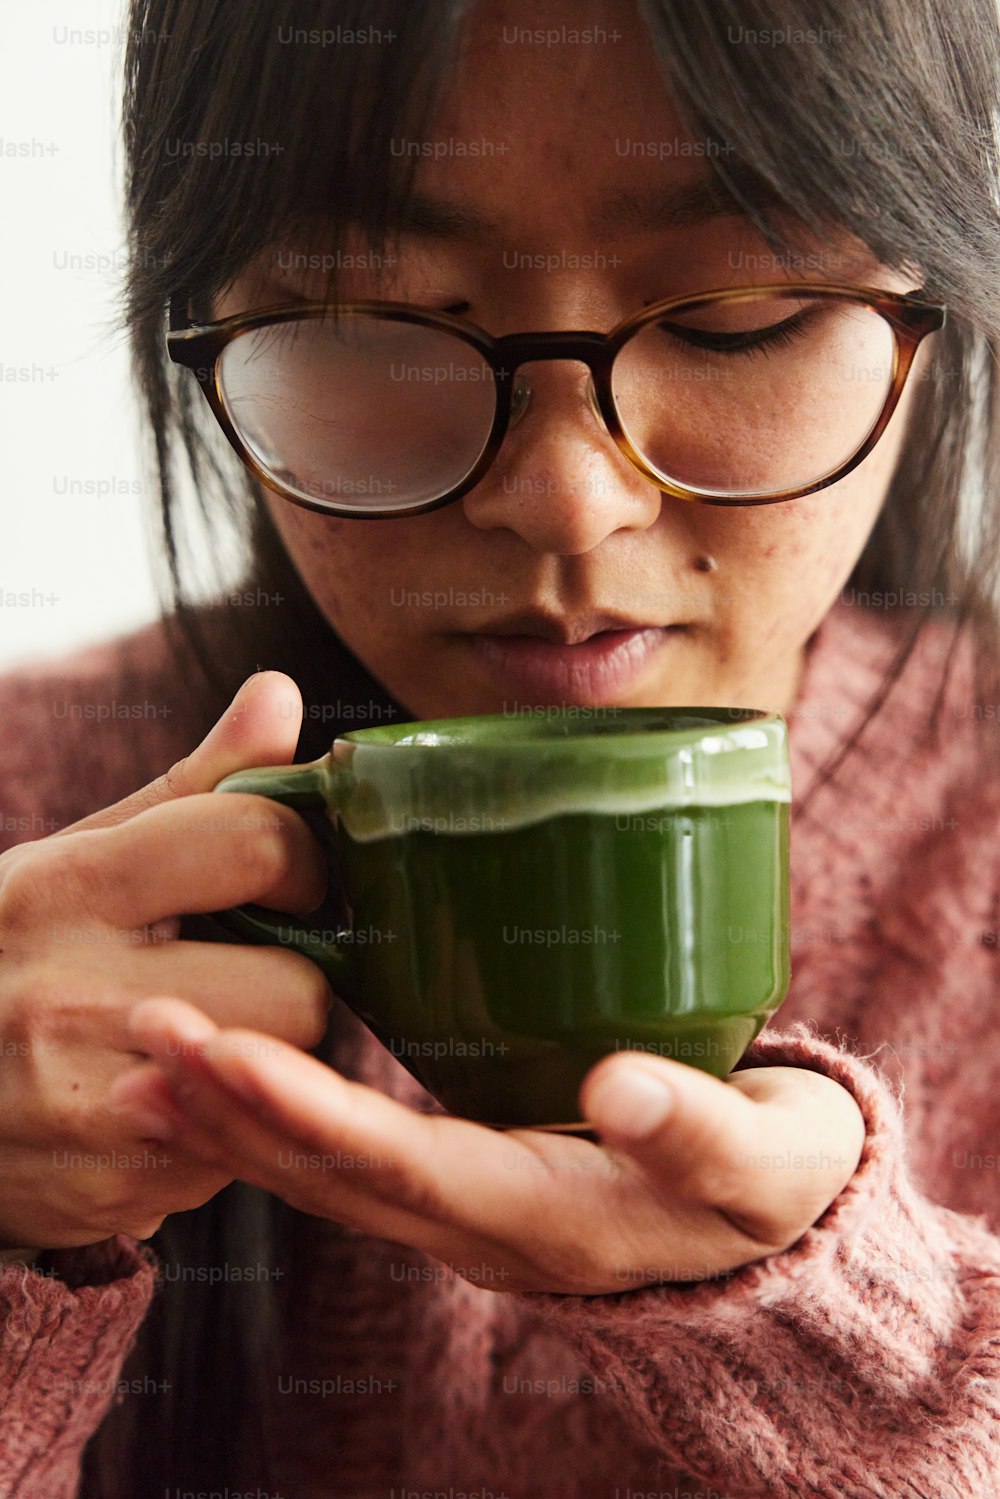 Eine Frau mit Brille, die eine grüne Tasse hält